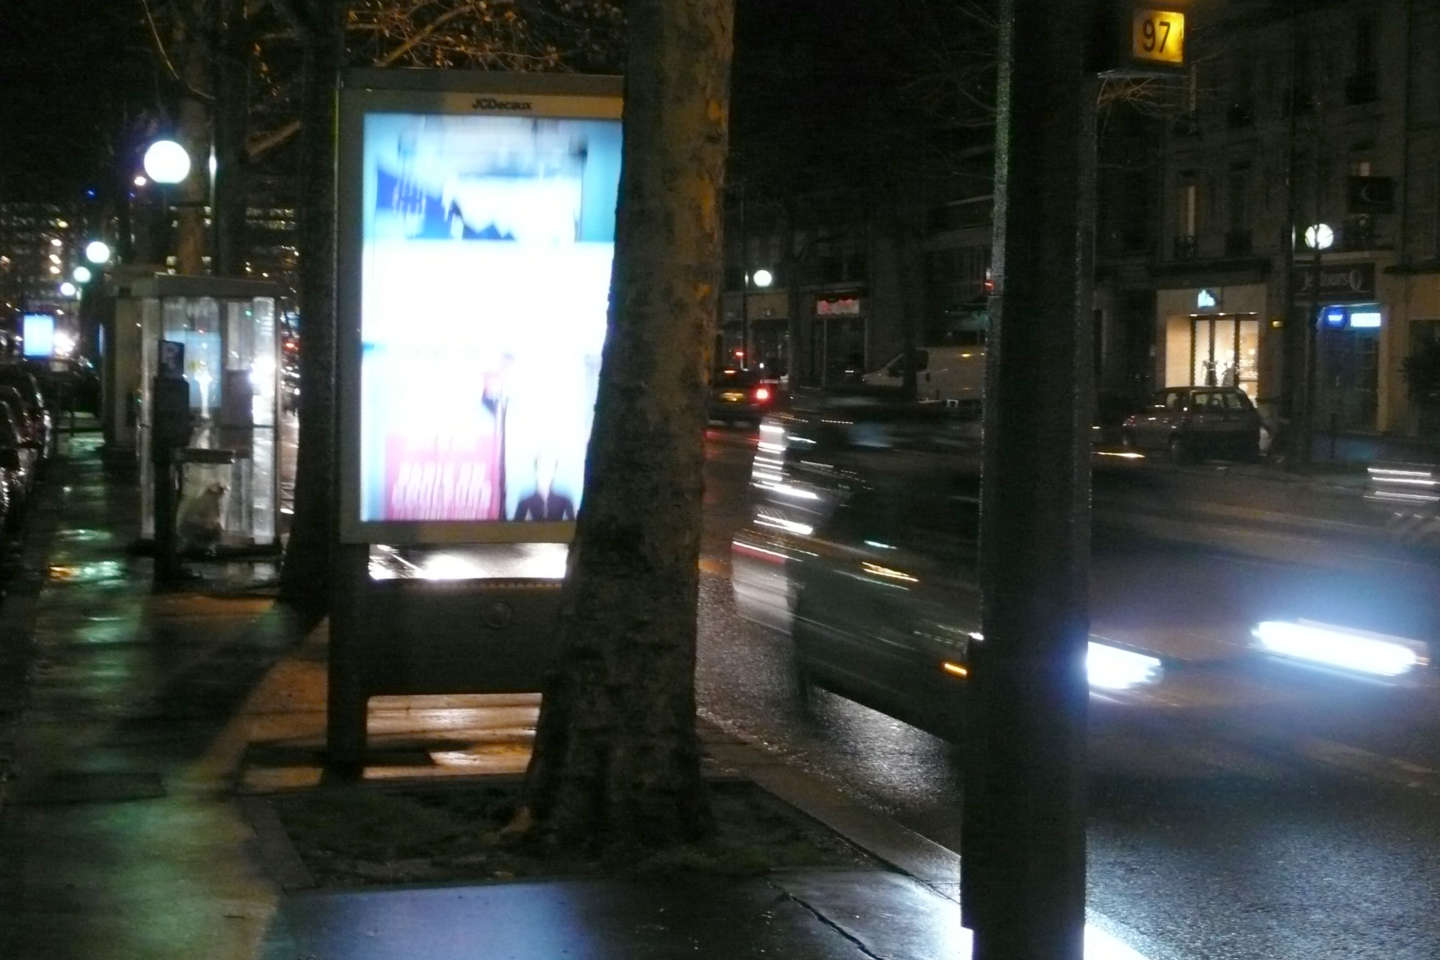 Les publicités lumineuses interdites entre 1 heure et 6 heures partout en France